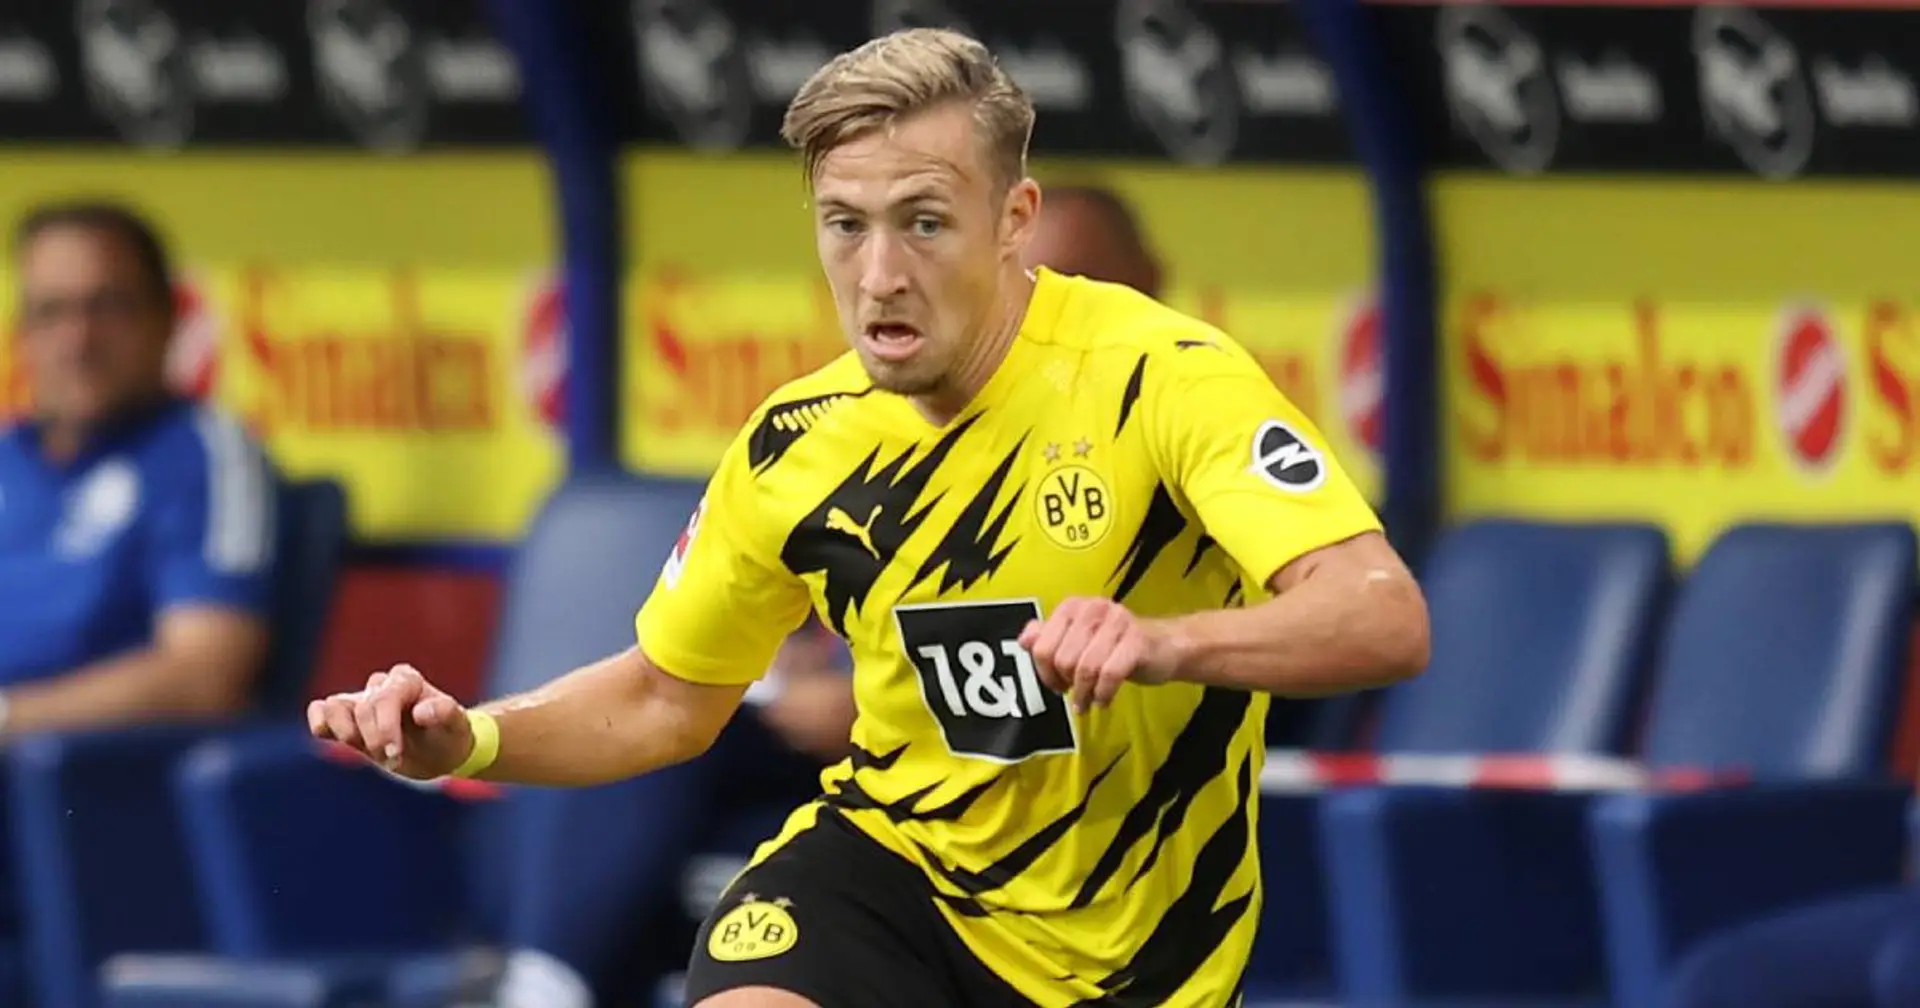 "Passlack gefällt": Fans sind froh, Felix nach 3 Jahren wieder im BVB-Trikot zu sehen